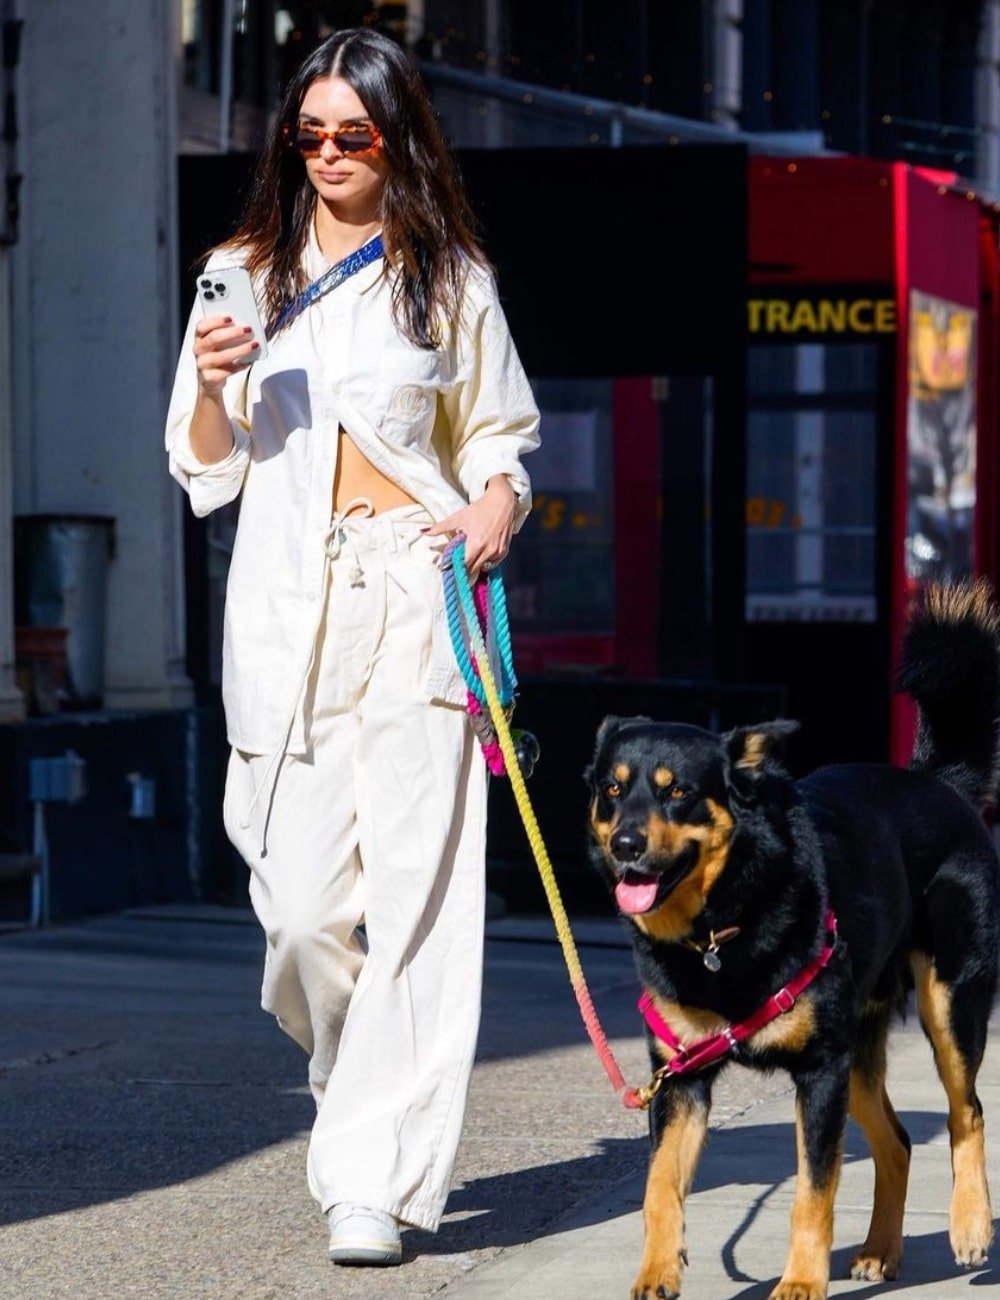 Emily Ratajkowski - calça branca, blusa de manga longa e óculos de sol - Emily Ratajkowski - Verão - andando na rua com um cachorro - https://stealthelook.com.br